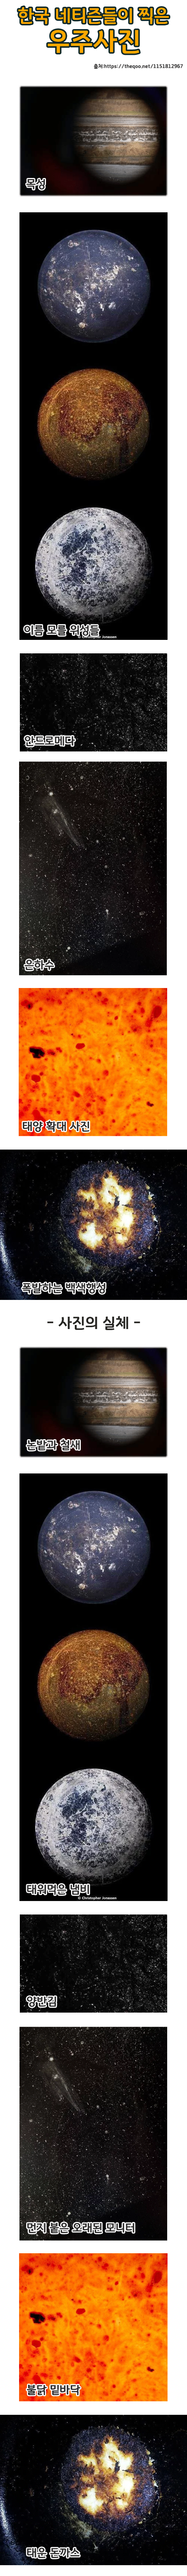 한국 네티즌이 찍은 우주사진